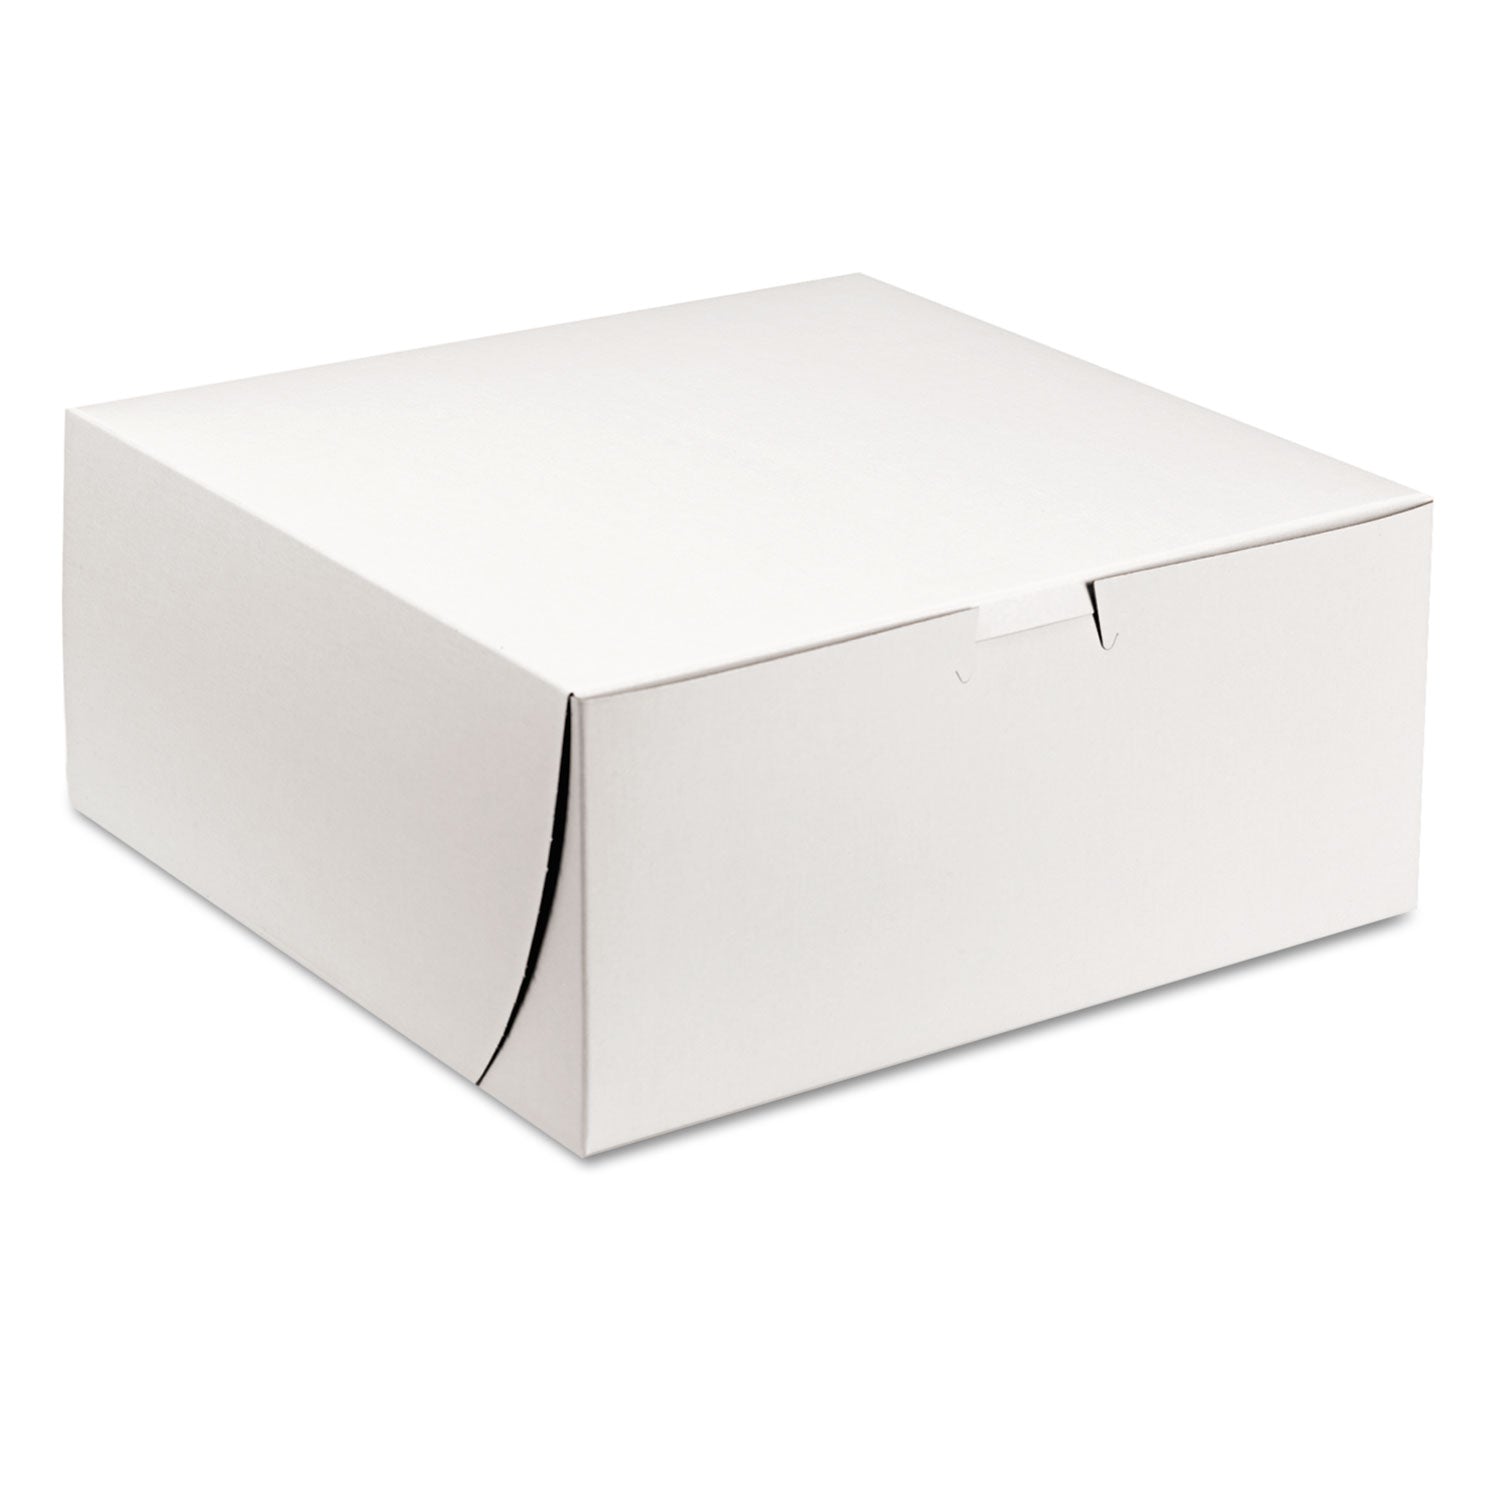 White One-Piece Non-Window Bakery Boxes, 9 x 9 x 4, White, Paper, 200/Carton - 